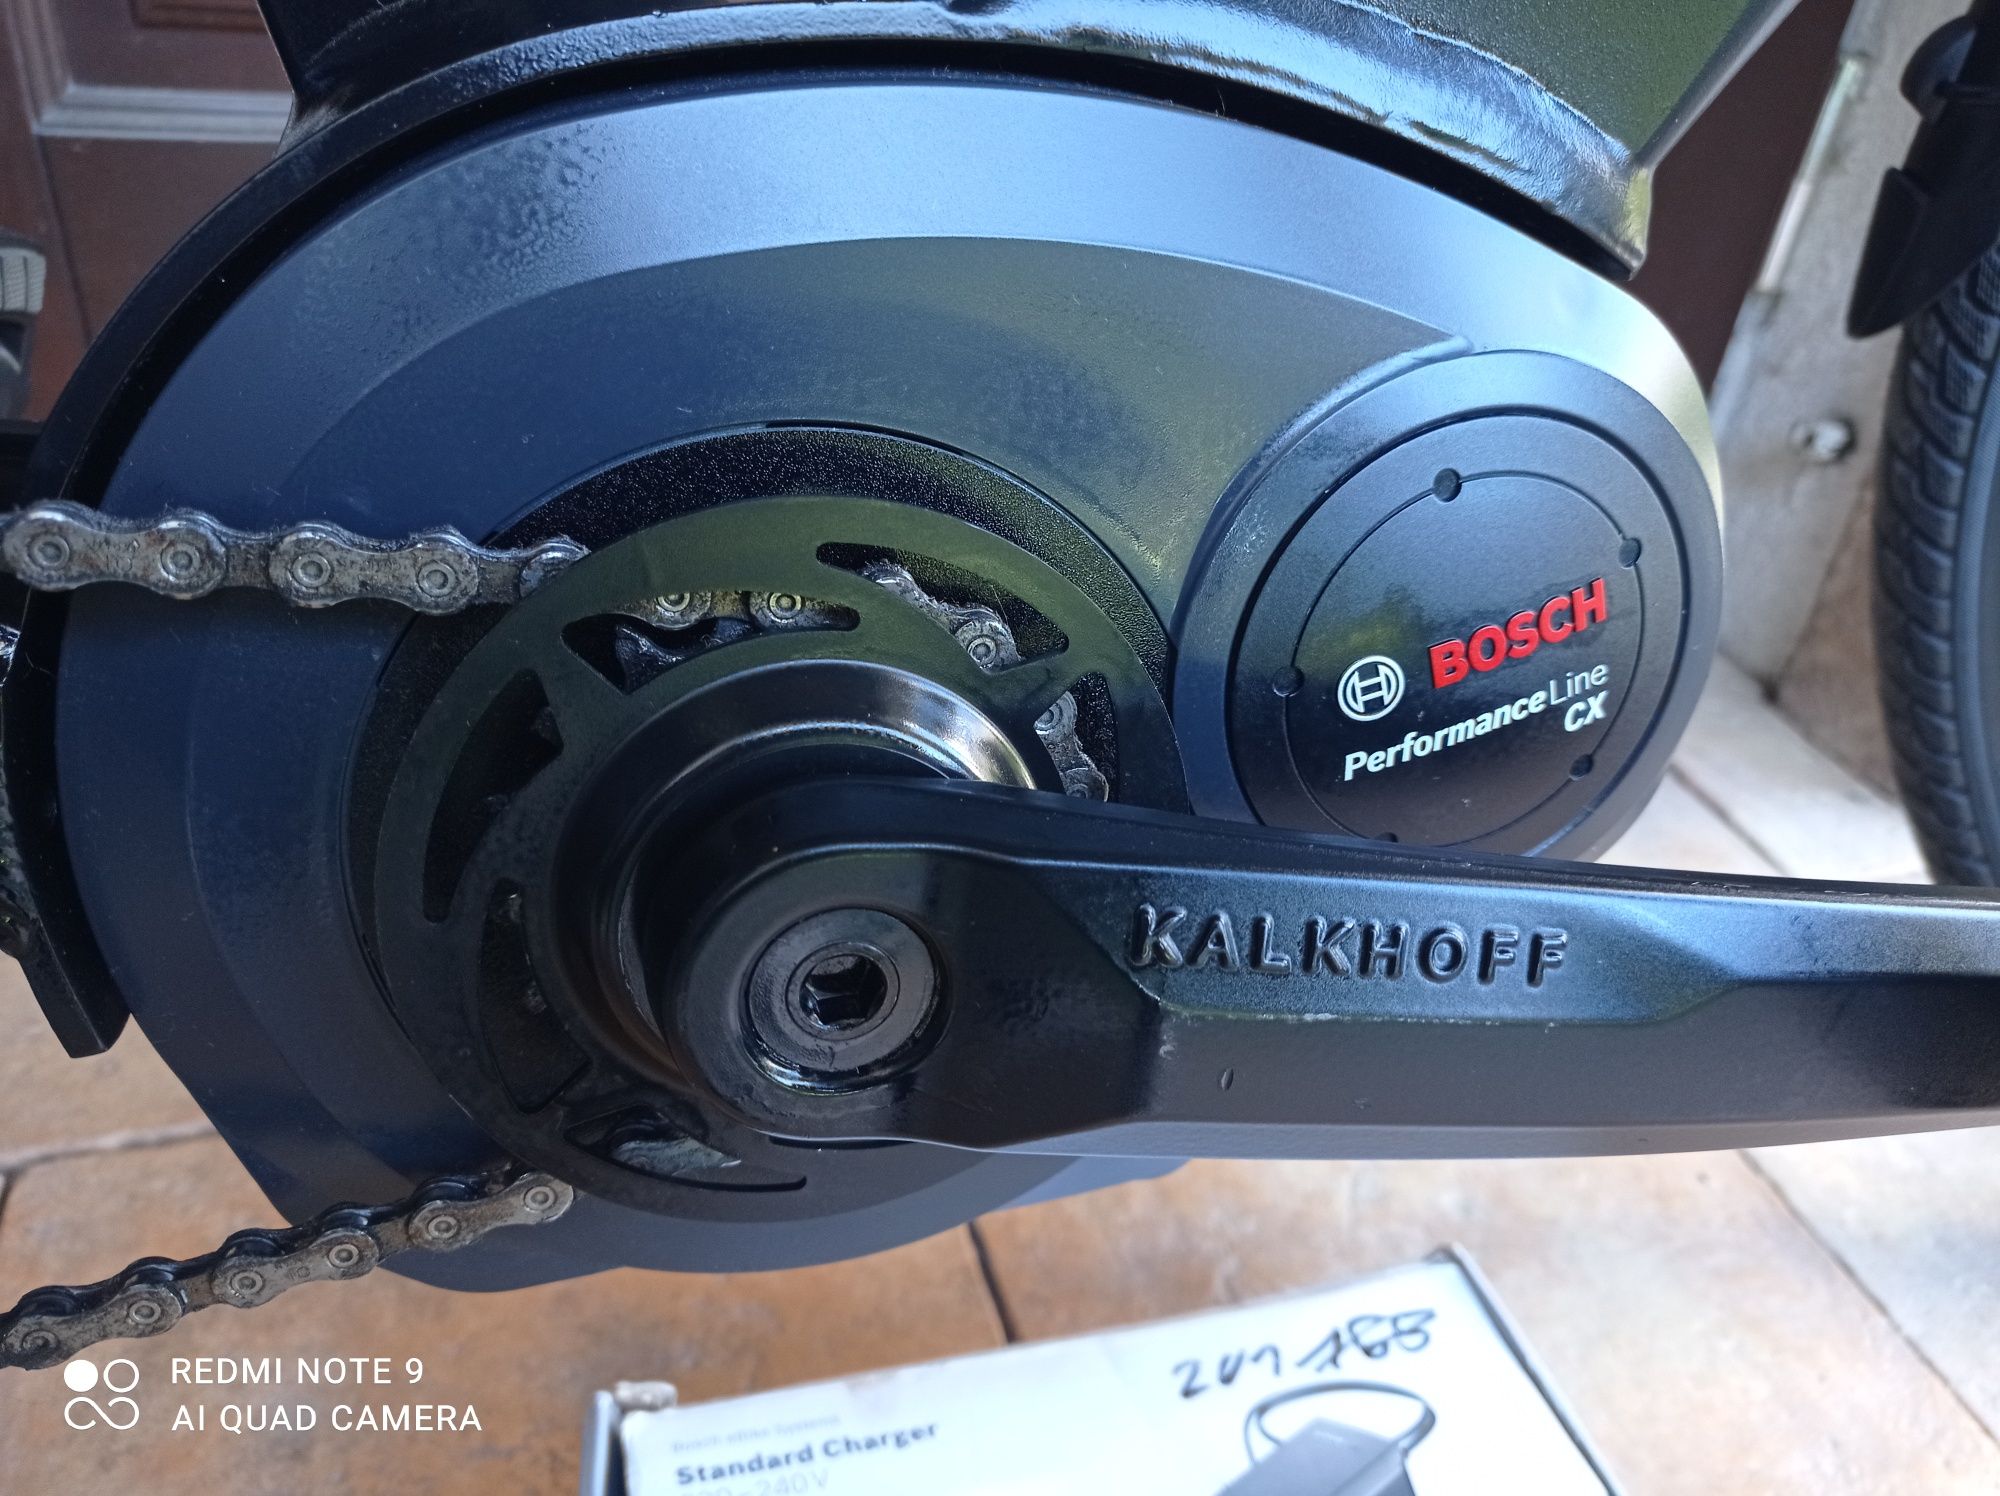 ROWERY Kalkhoff 28" Elektryczny Bosch Performance CX DEORE SLX Nowy